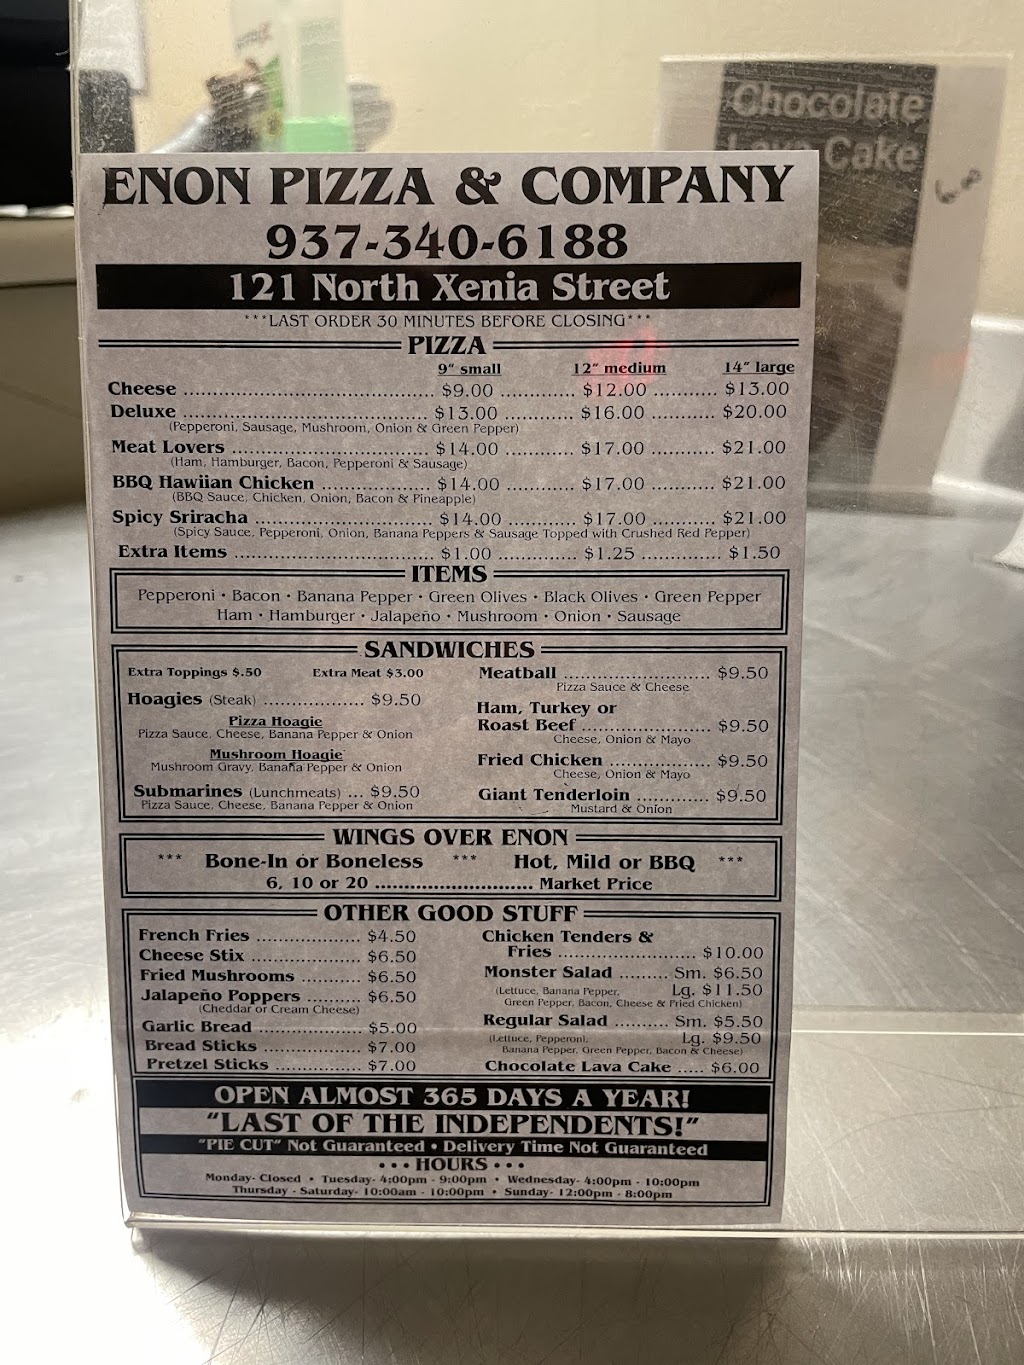 Enon Pizza & Company | 121 N Xenia Dr, Enon, OH 45323 | Phone: (937) 340-6188